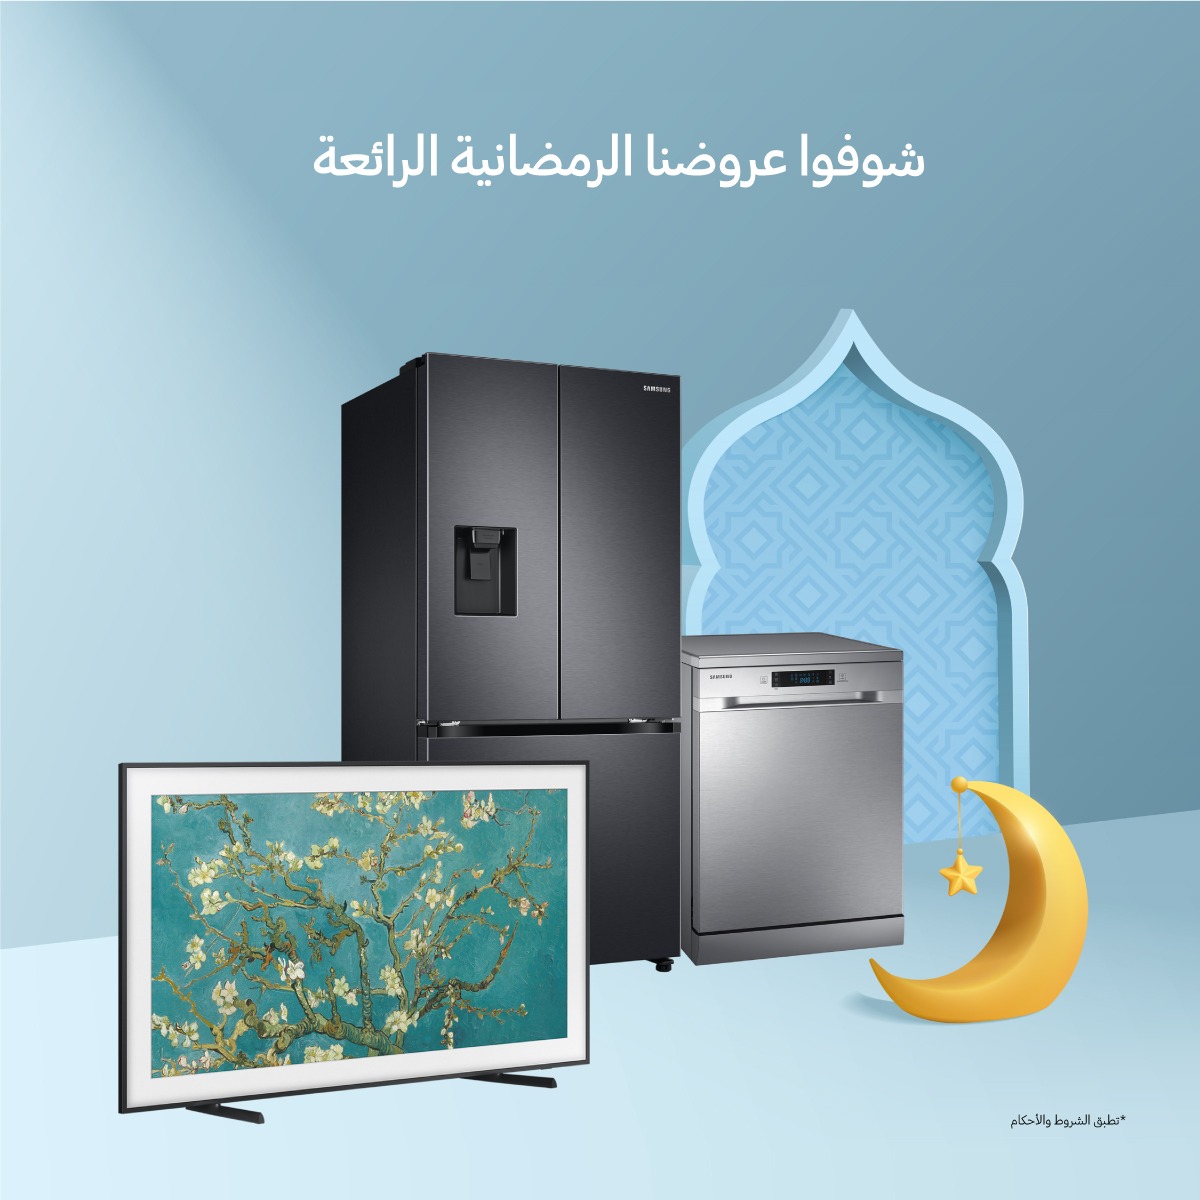 《سامسونج إلكترونيكس المشرق العربي》 تسهل تفاصيل الحياة وتعزز العلاقات الاجتماعية في رمضان مع عروضها على الأجهزة المنزلية الرقمية وأجهزة التلفاز الذكية 